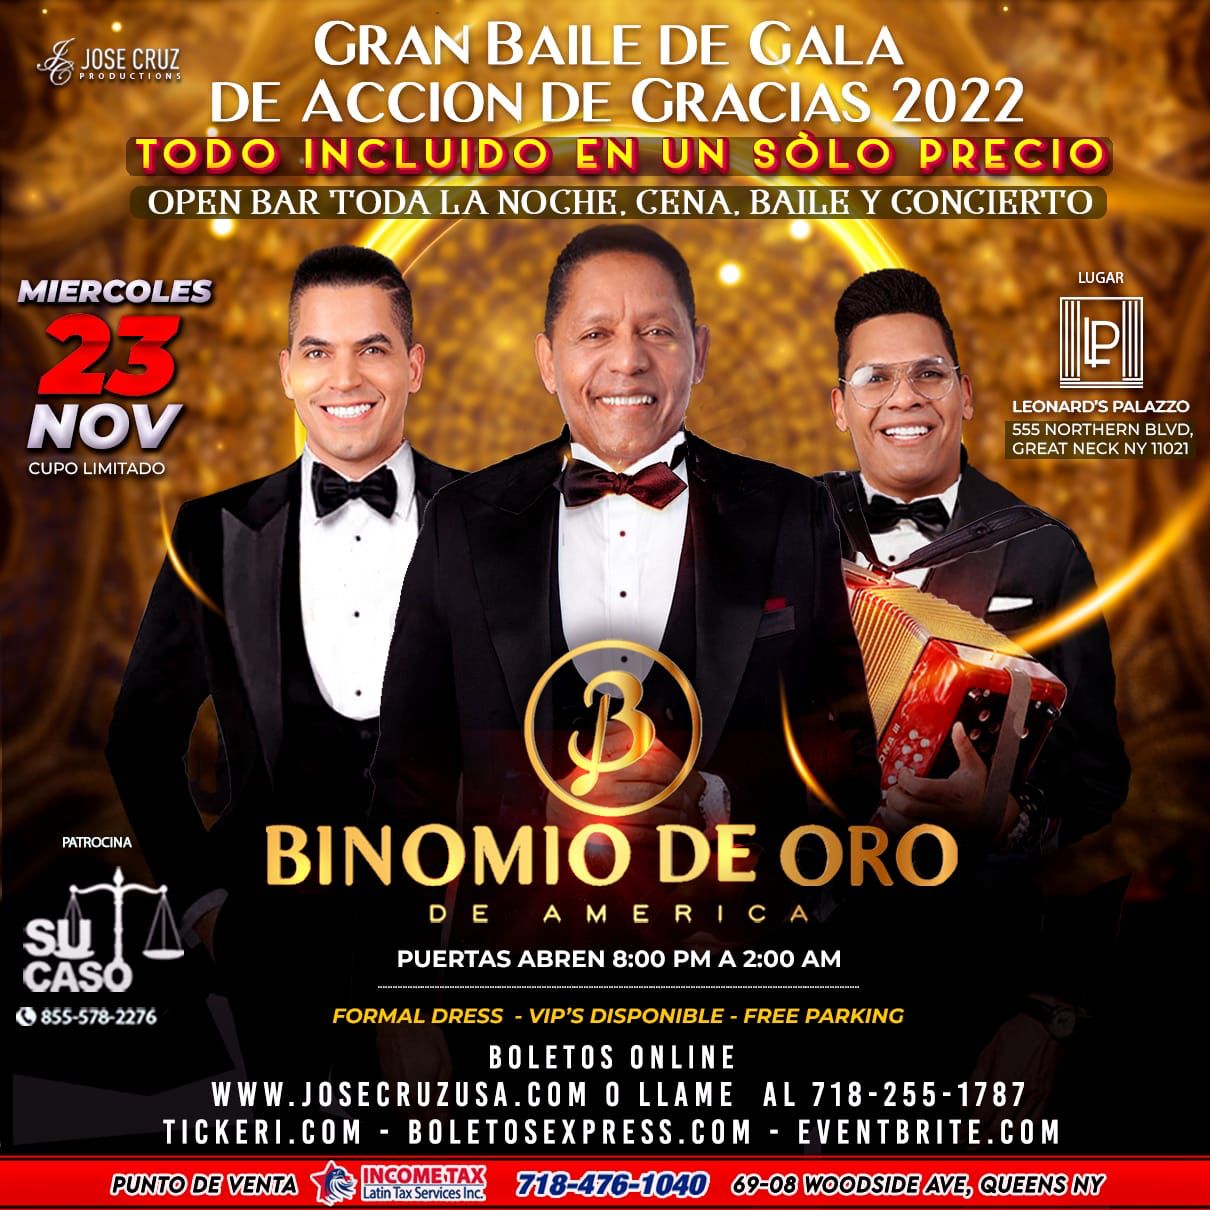 11-23-22 BINOMIO DE ORO / BAILE DE GALA GREAT NECK NY